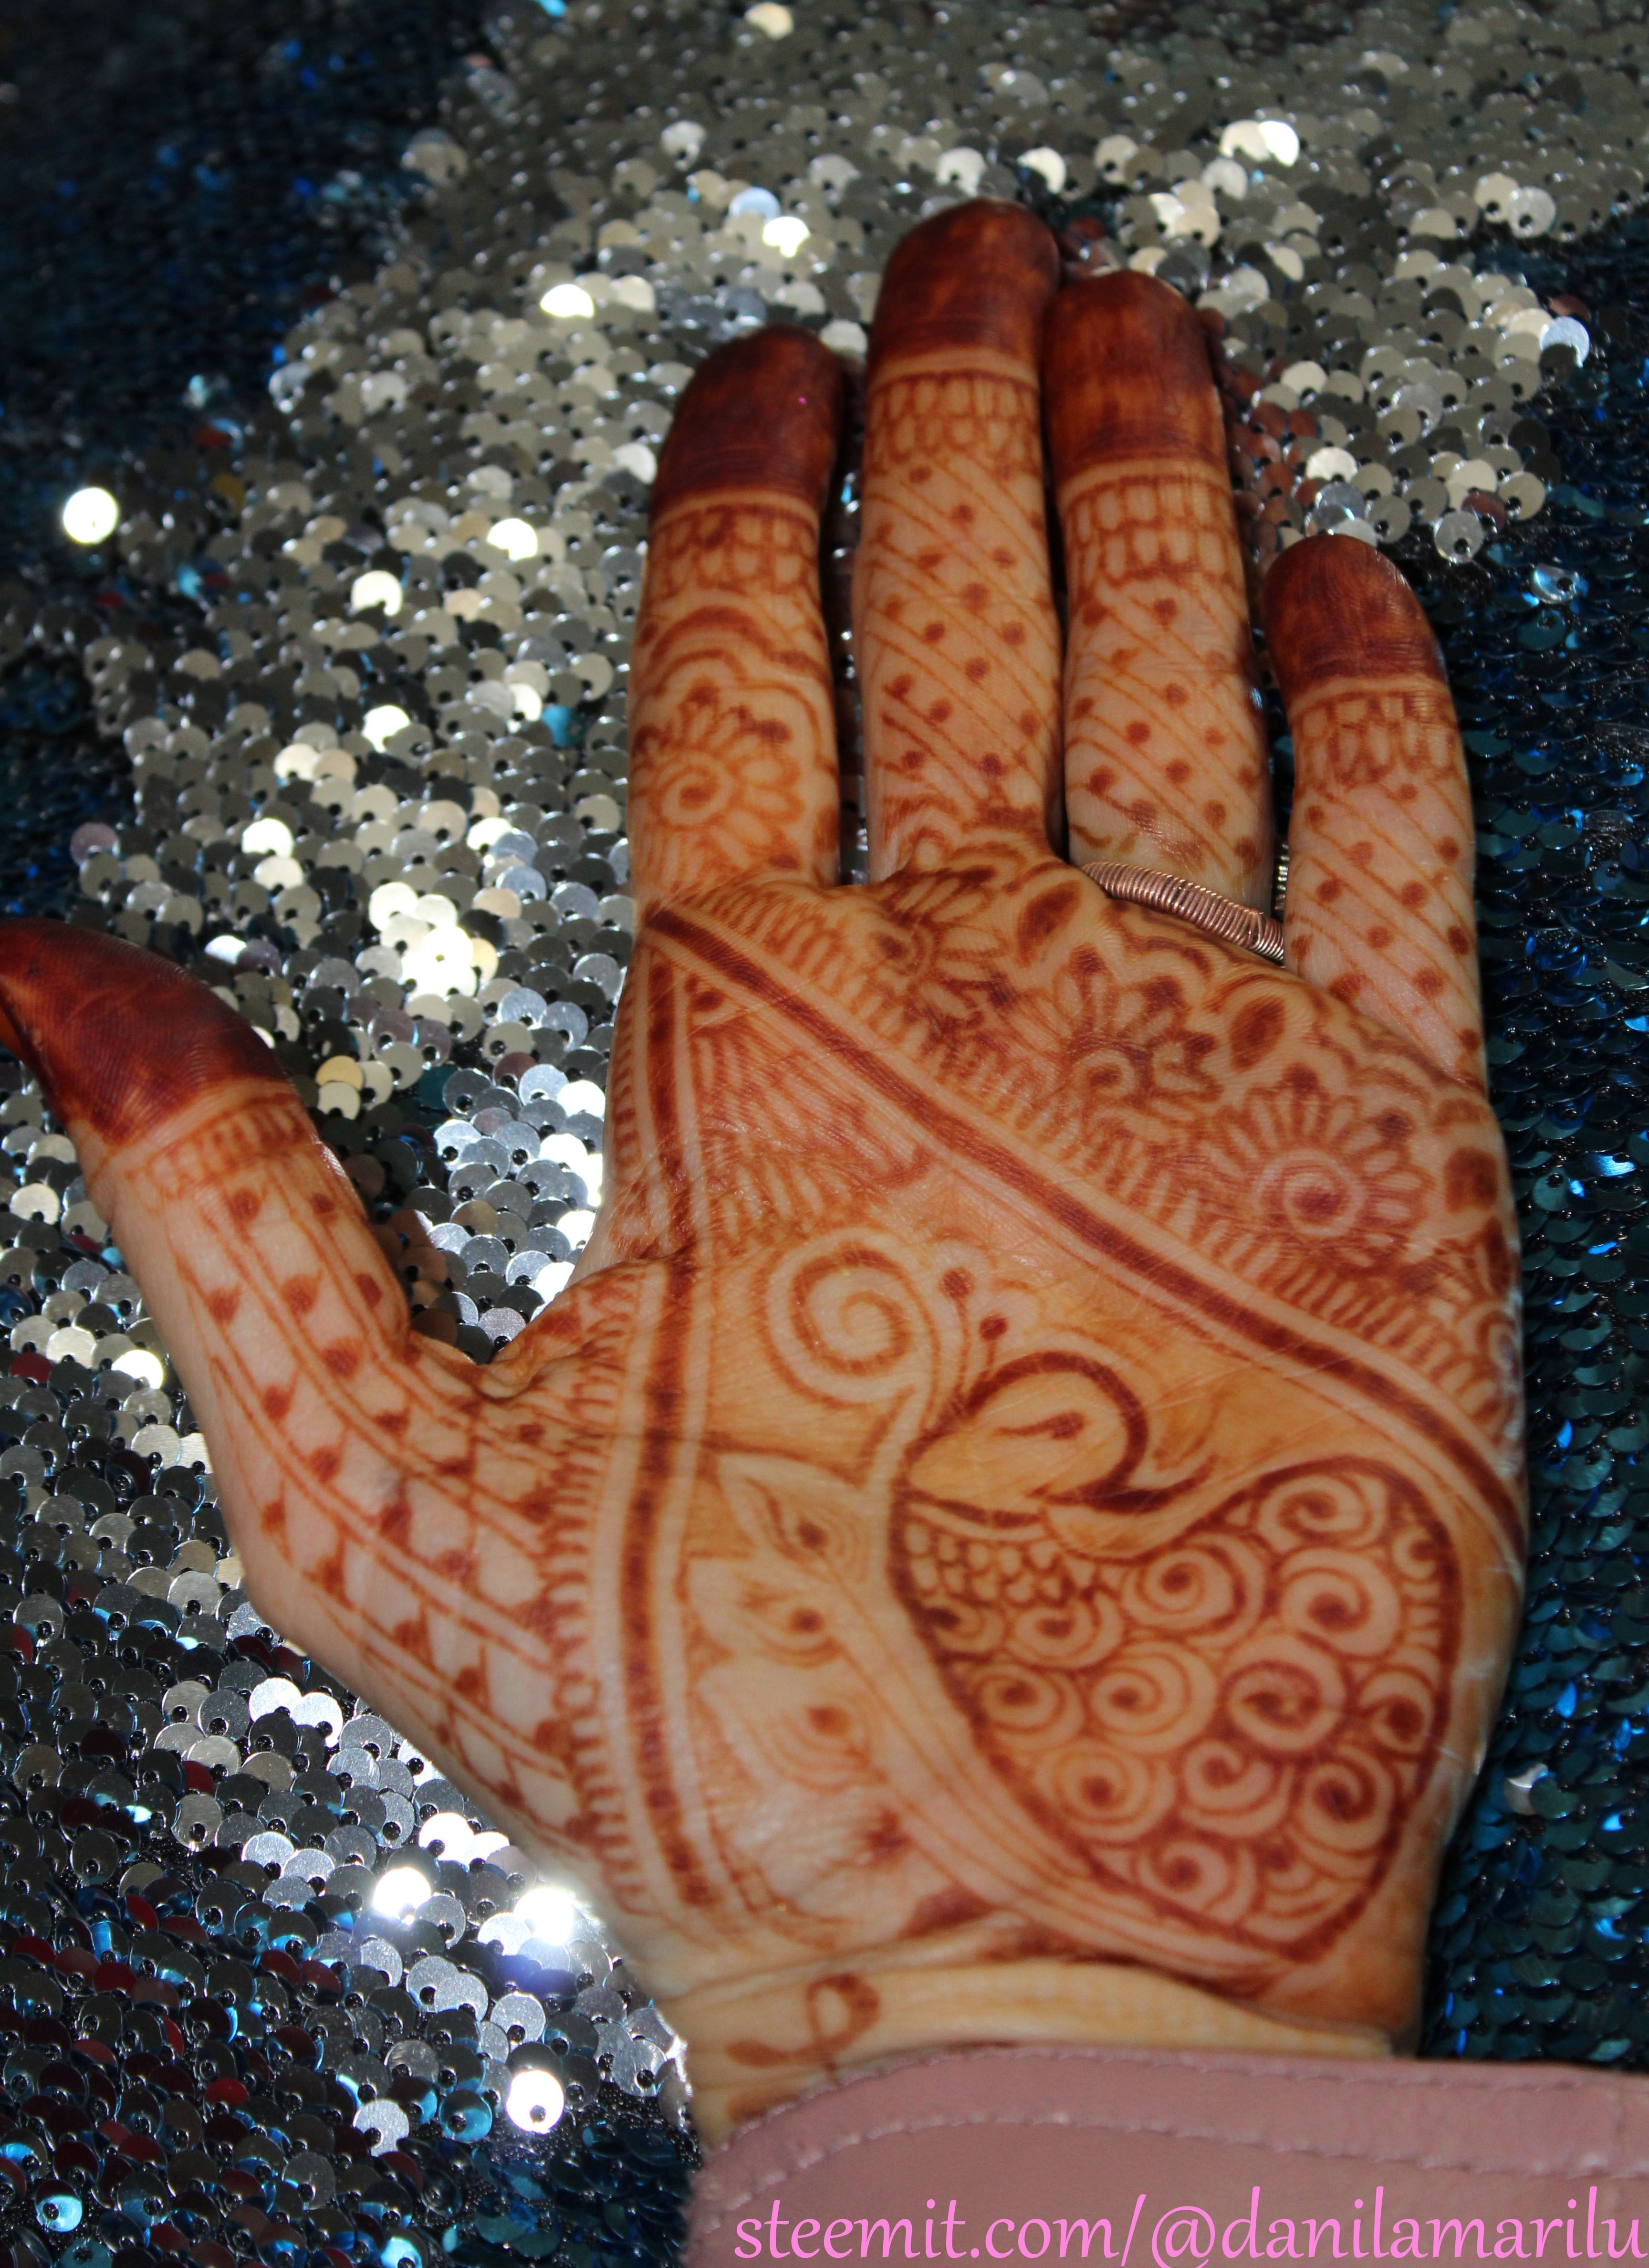 henna stain watermark pc.jpg